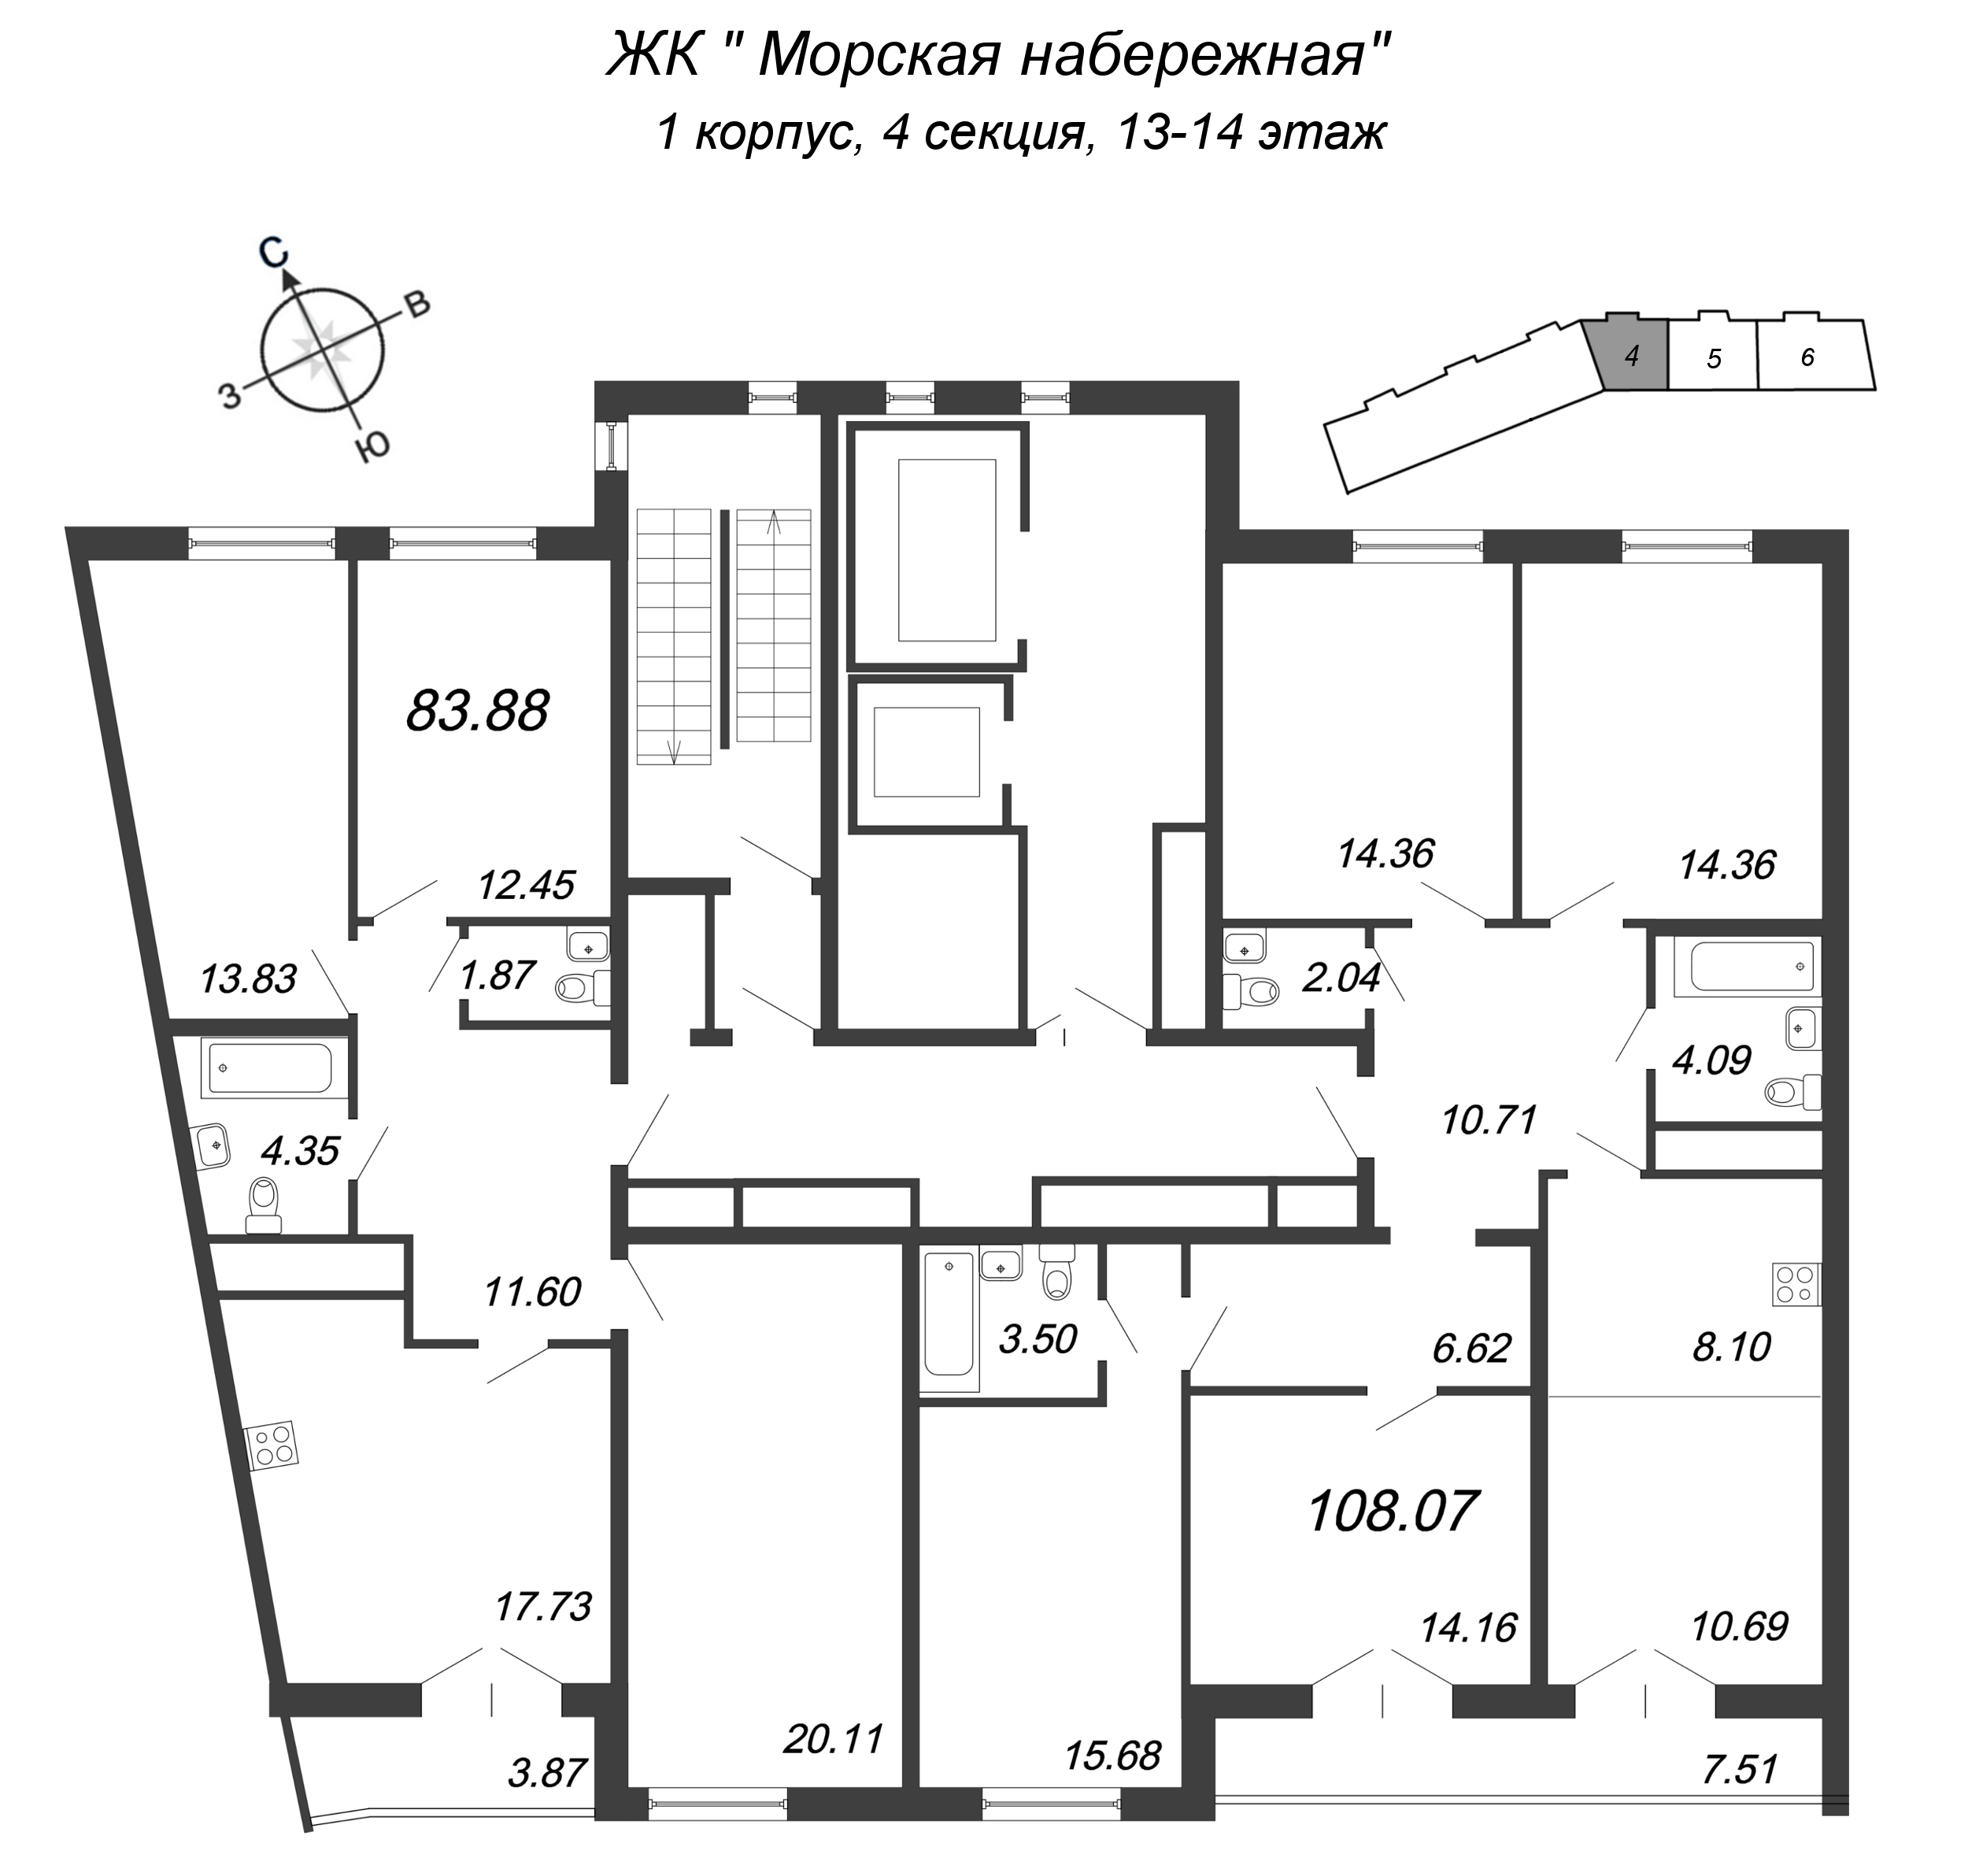 5-комнатная (Евро) квартира, 107.9 м² в ЖК "Морская набережная. SeaView" - планировка этажа